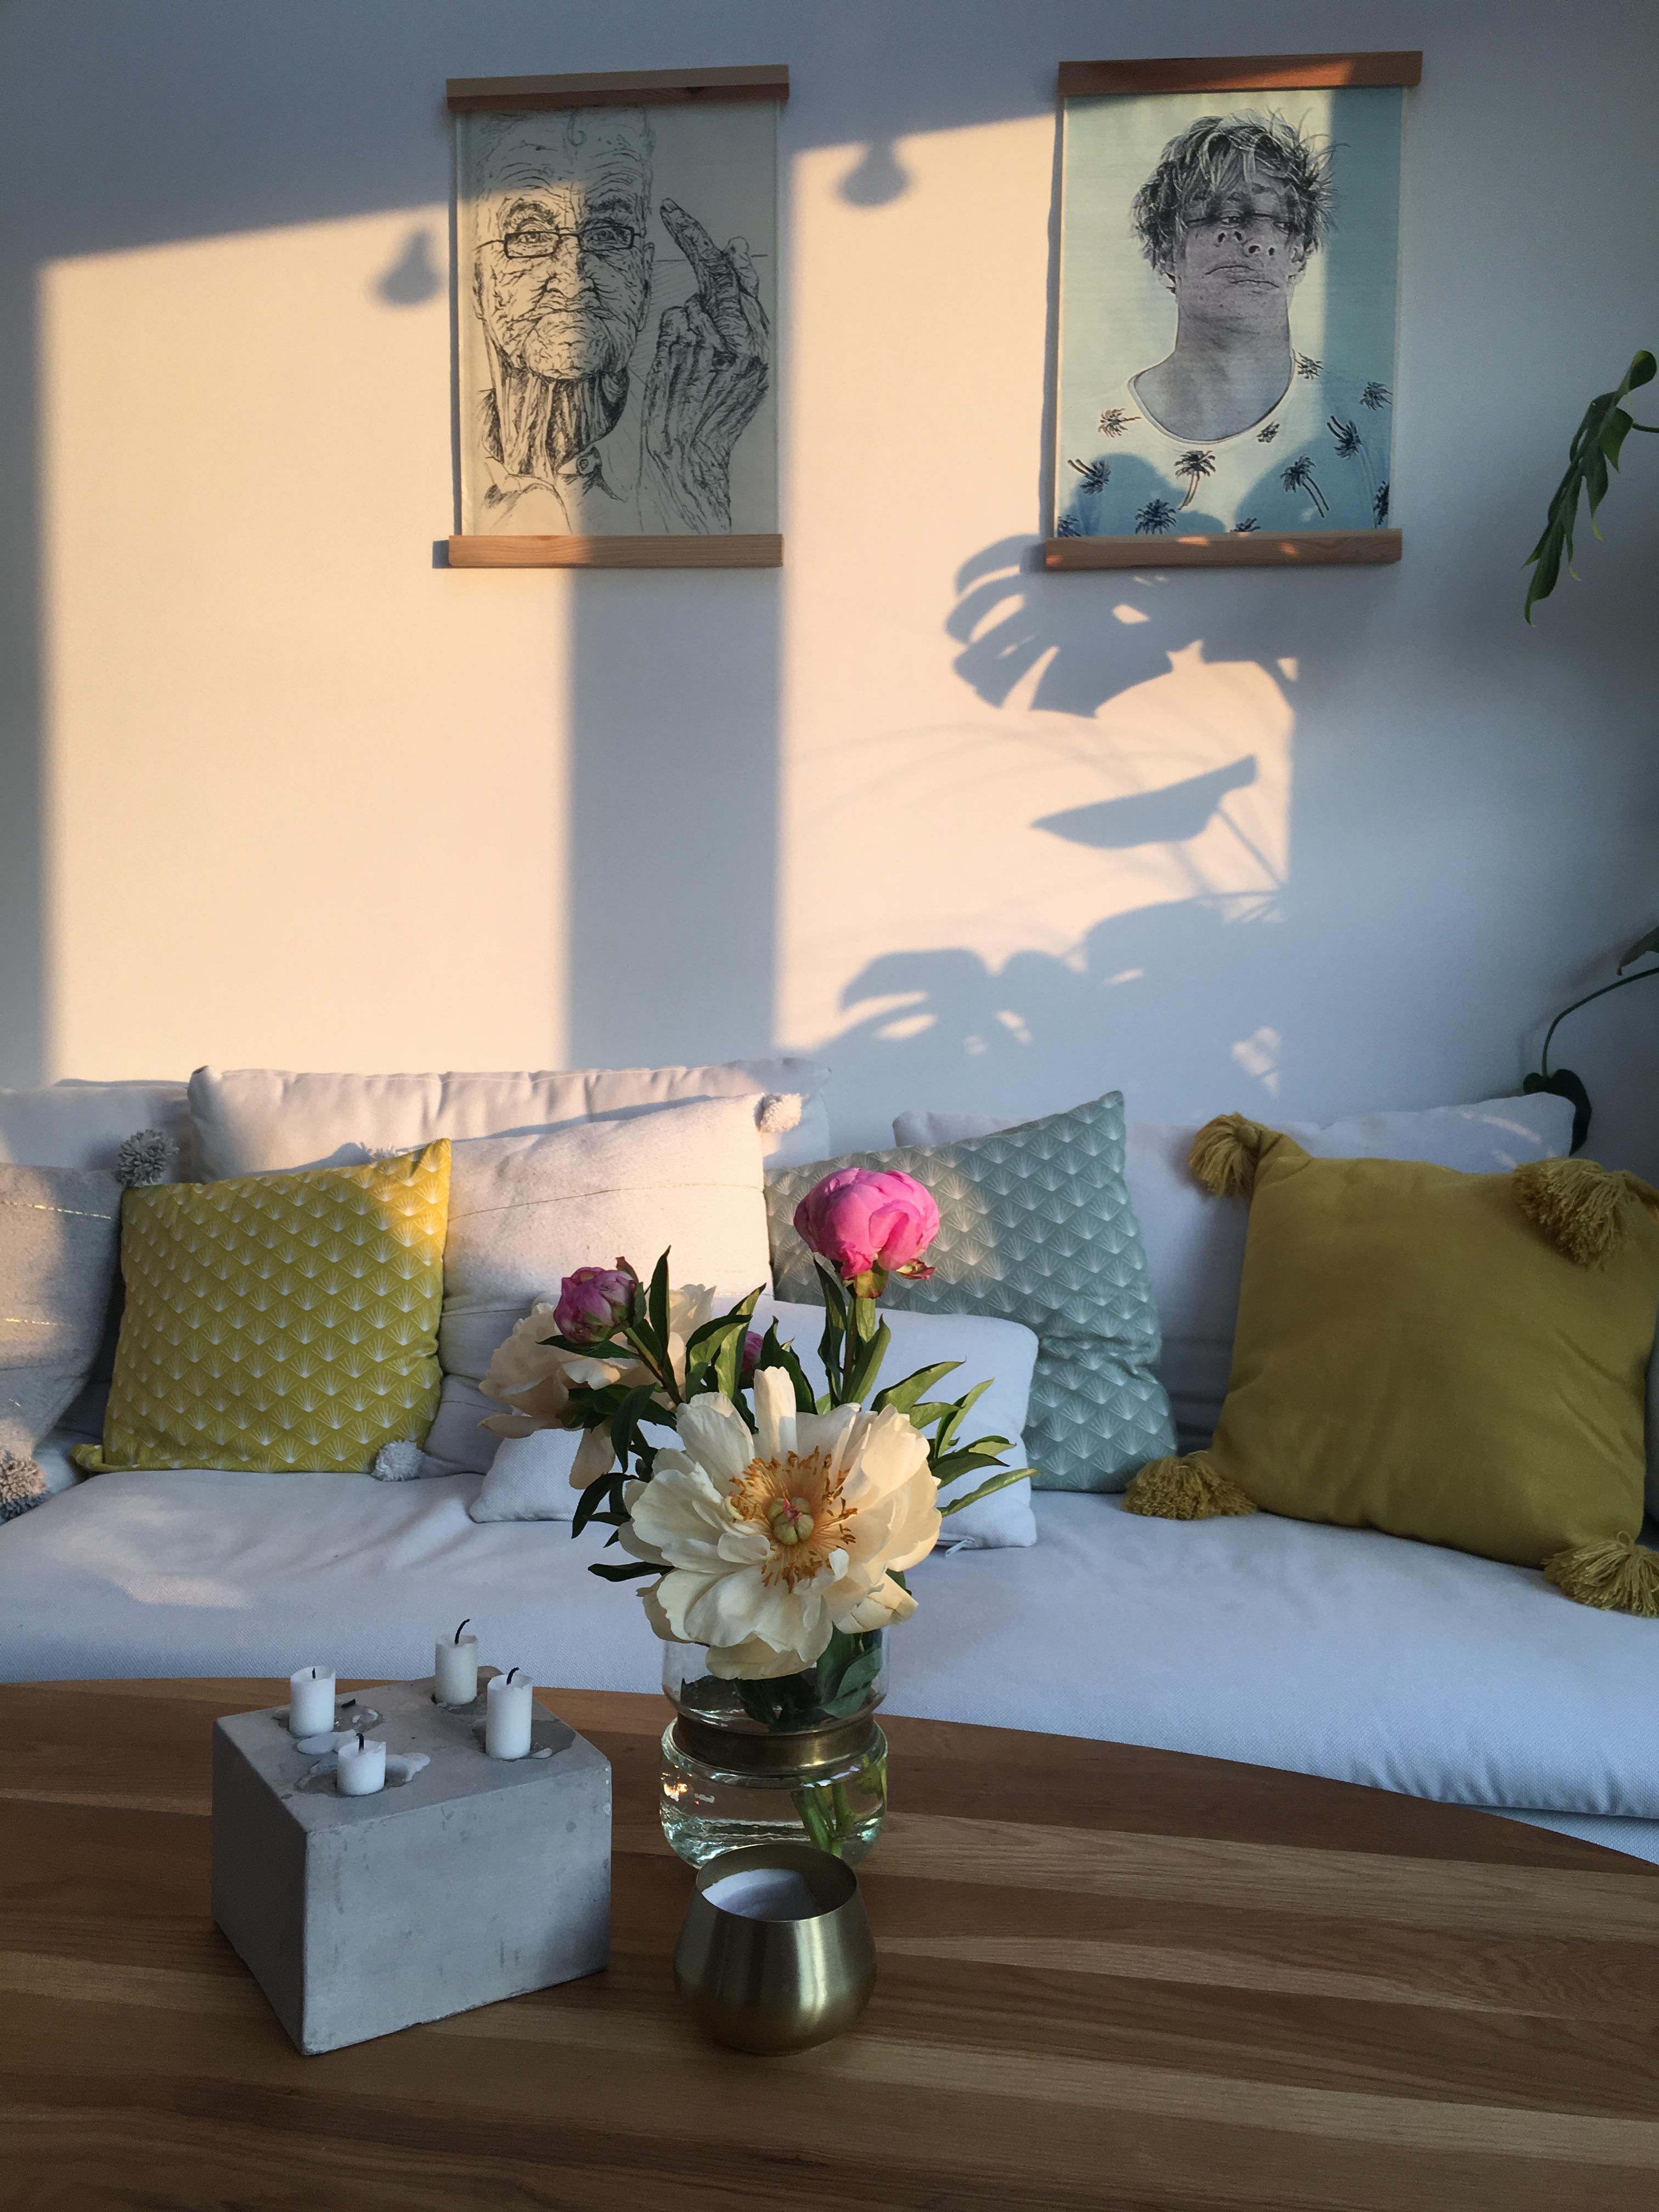 Lichtspiel & frische Blumen 🌸🌞
#perfectmatch #couchmagazin #interior 